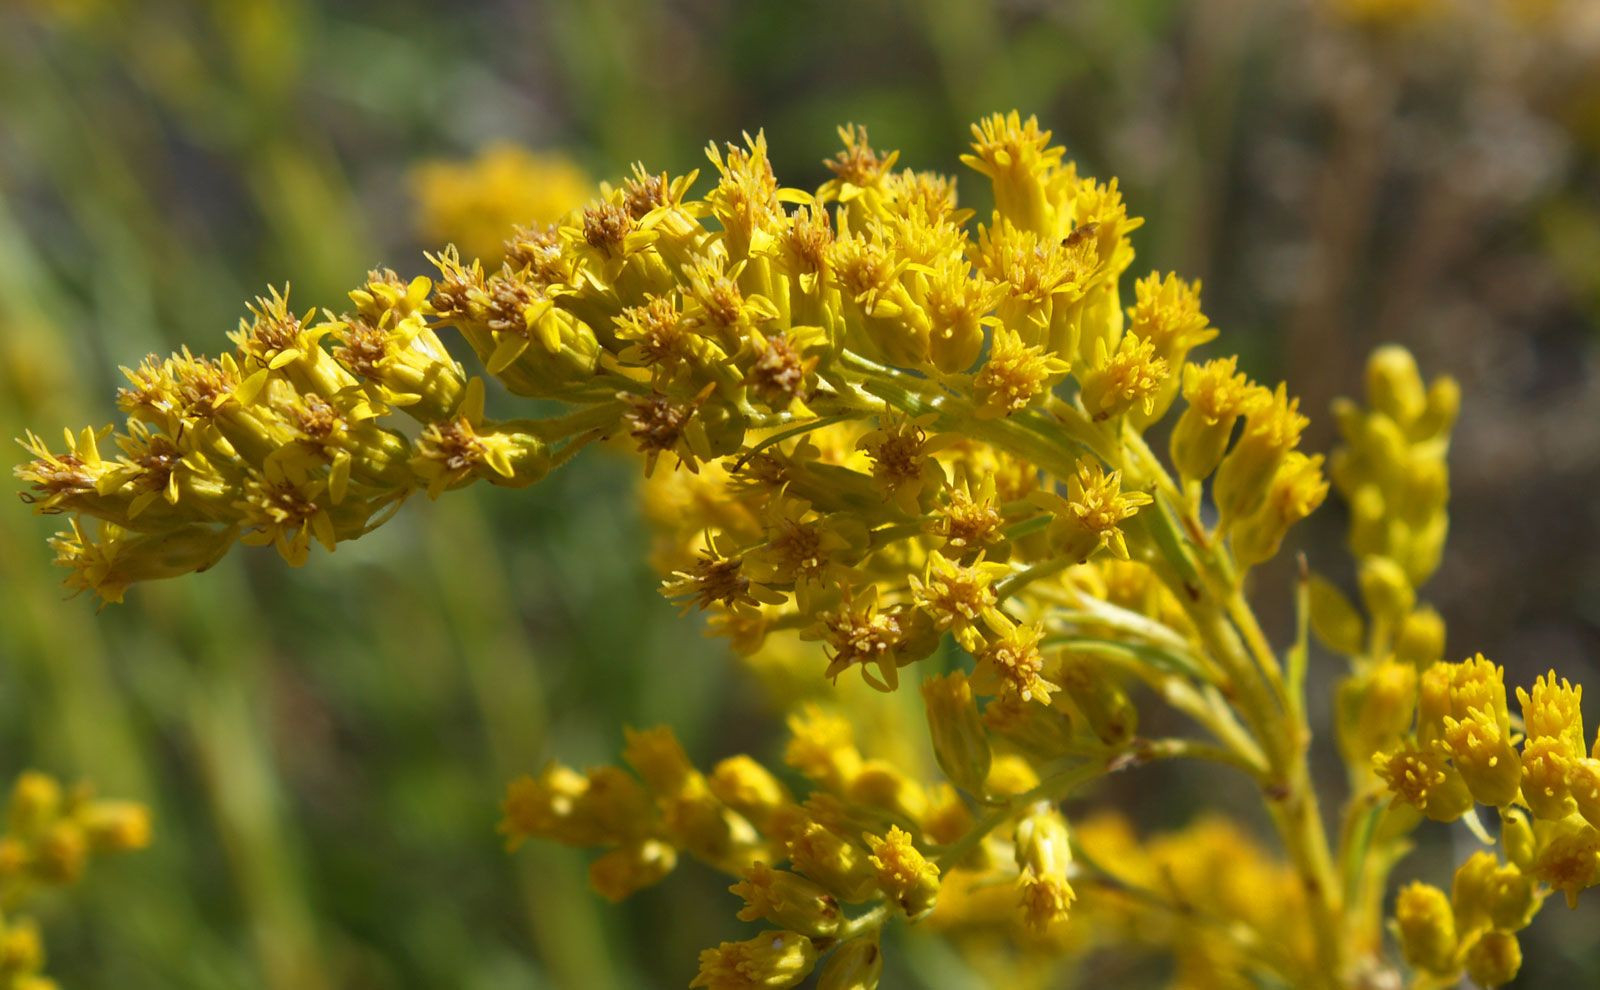 Goldenrod | Description, Species, Flowers, & Facts | Britannica